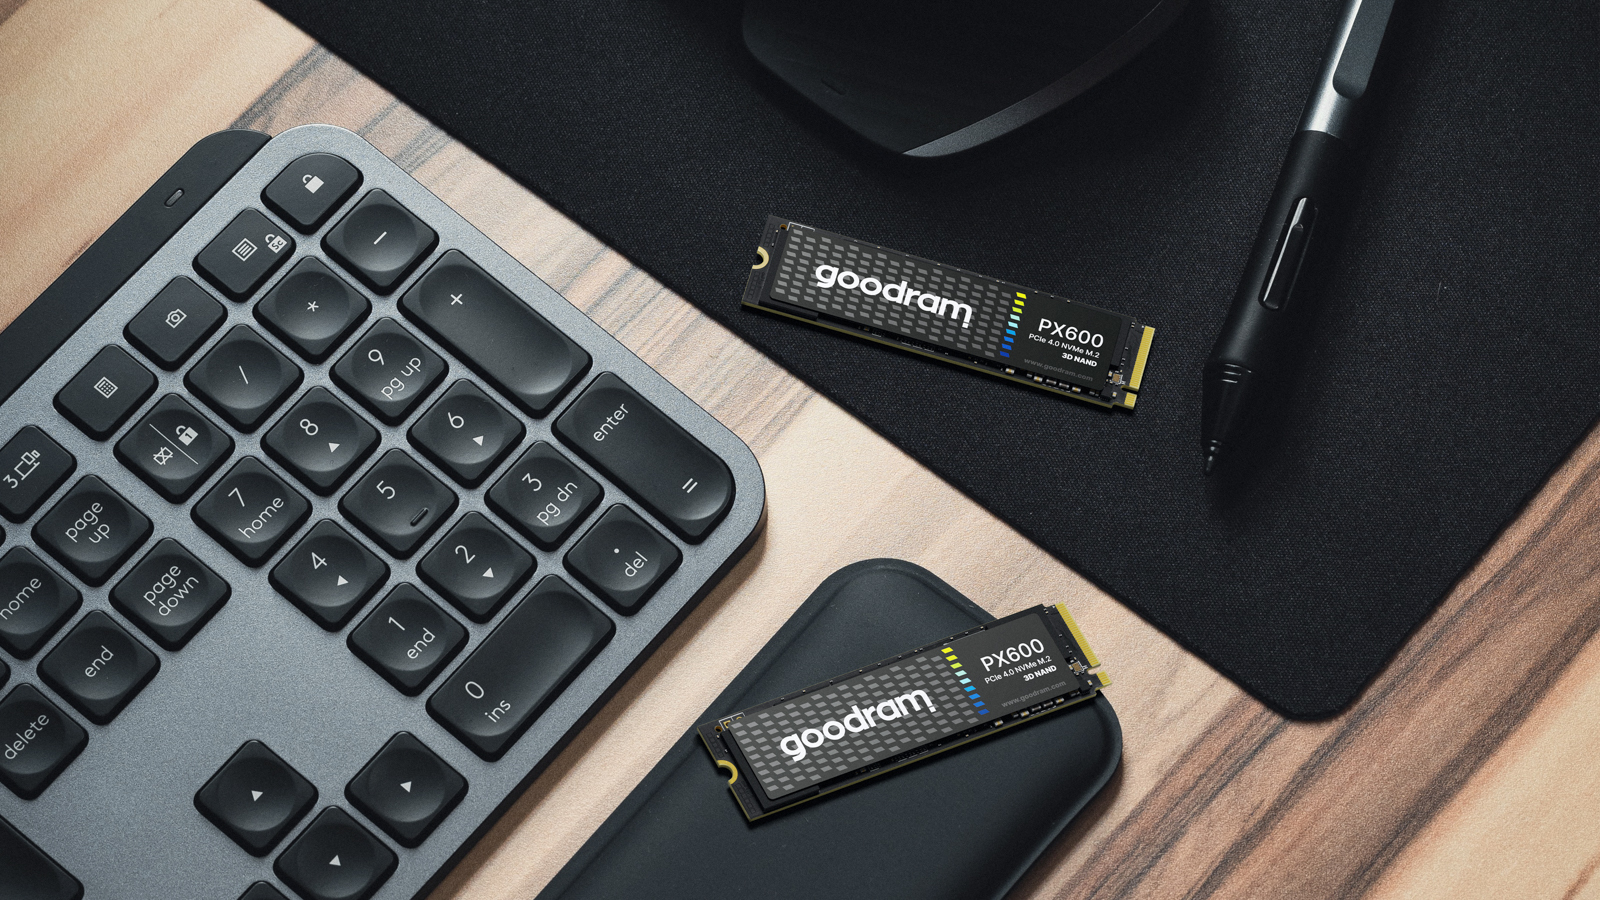 Goodram PX600 SSD, PCIe 4x4, 250 GB, M.2 2280, NVMe, RETAIL